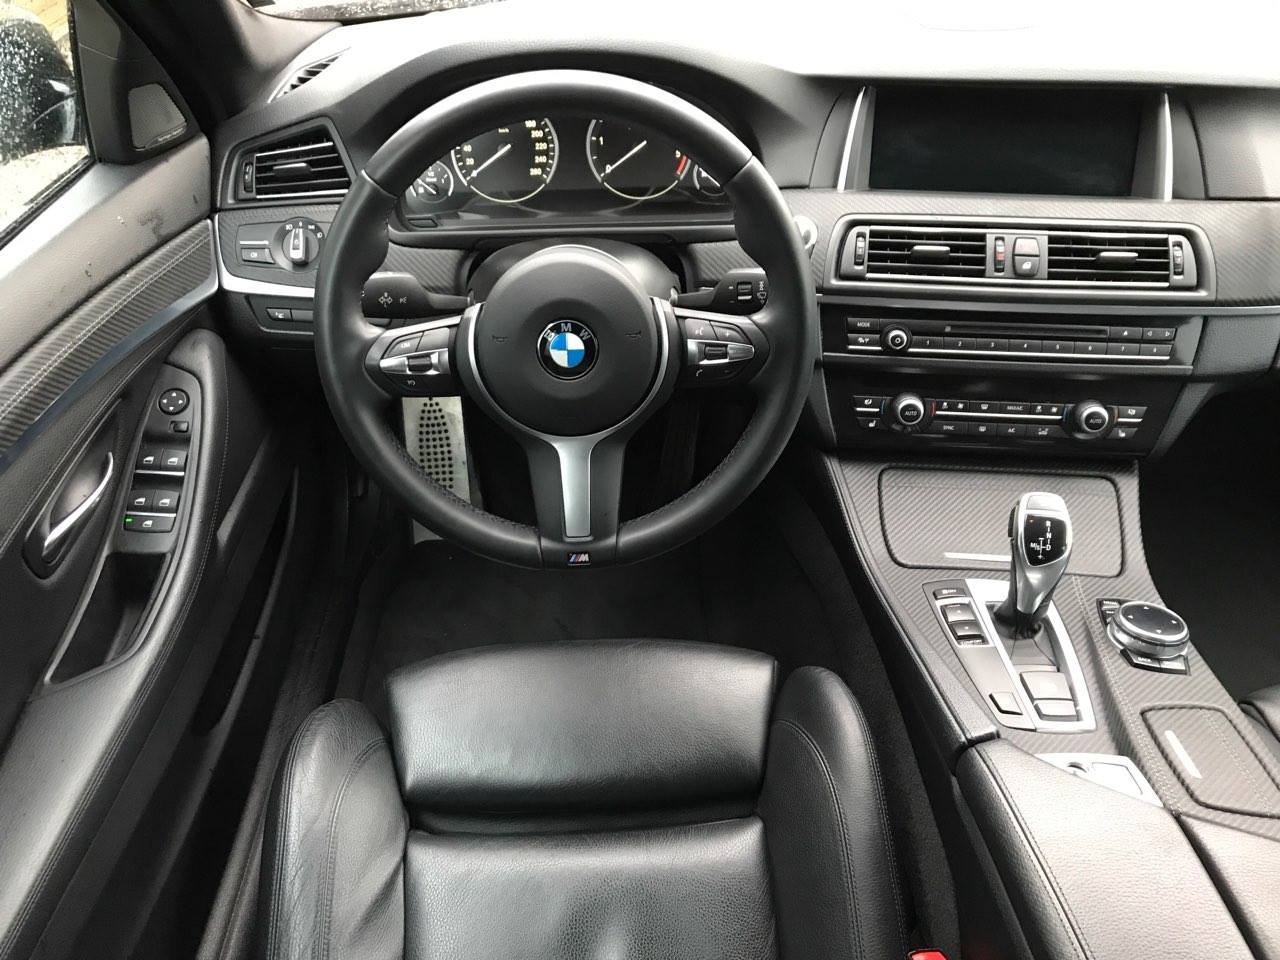 Kolejne #Listwy #Dekory #BMW #F10 #F11 #Obszycie #Odnowa #Drugiezycie po montażu. Efekt jak widać ?? Też chcesz odświeżyć wnętrze swojego auta? Koniecznie dzwoń do nas!